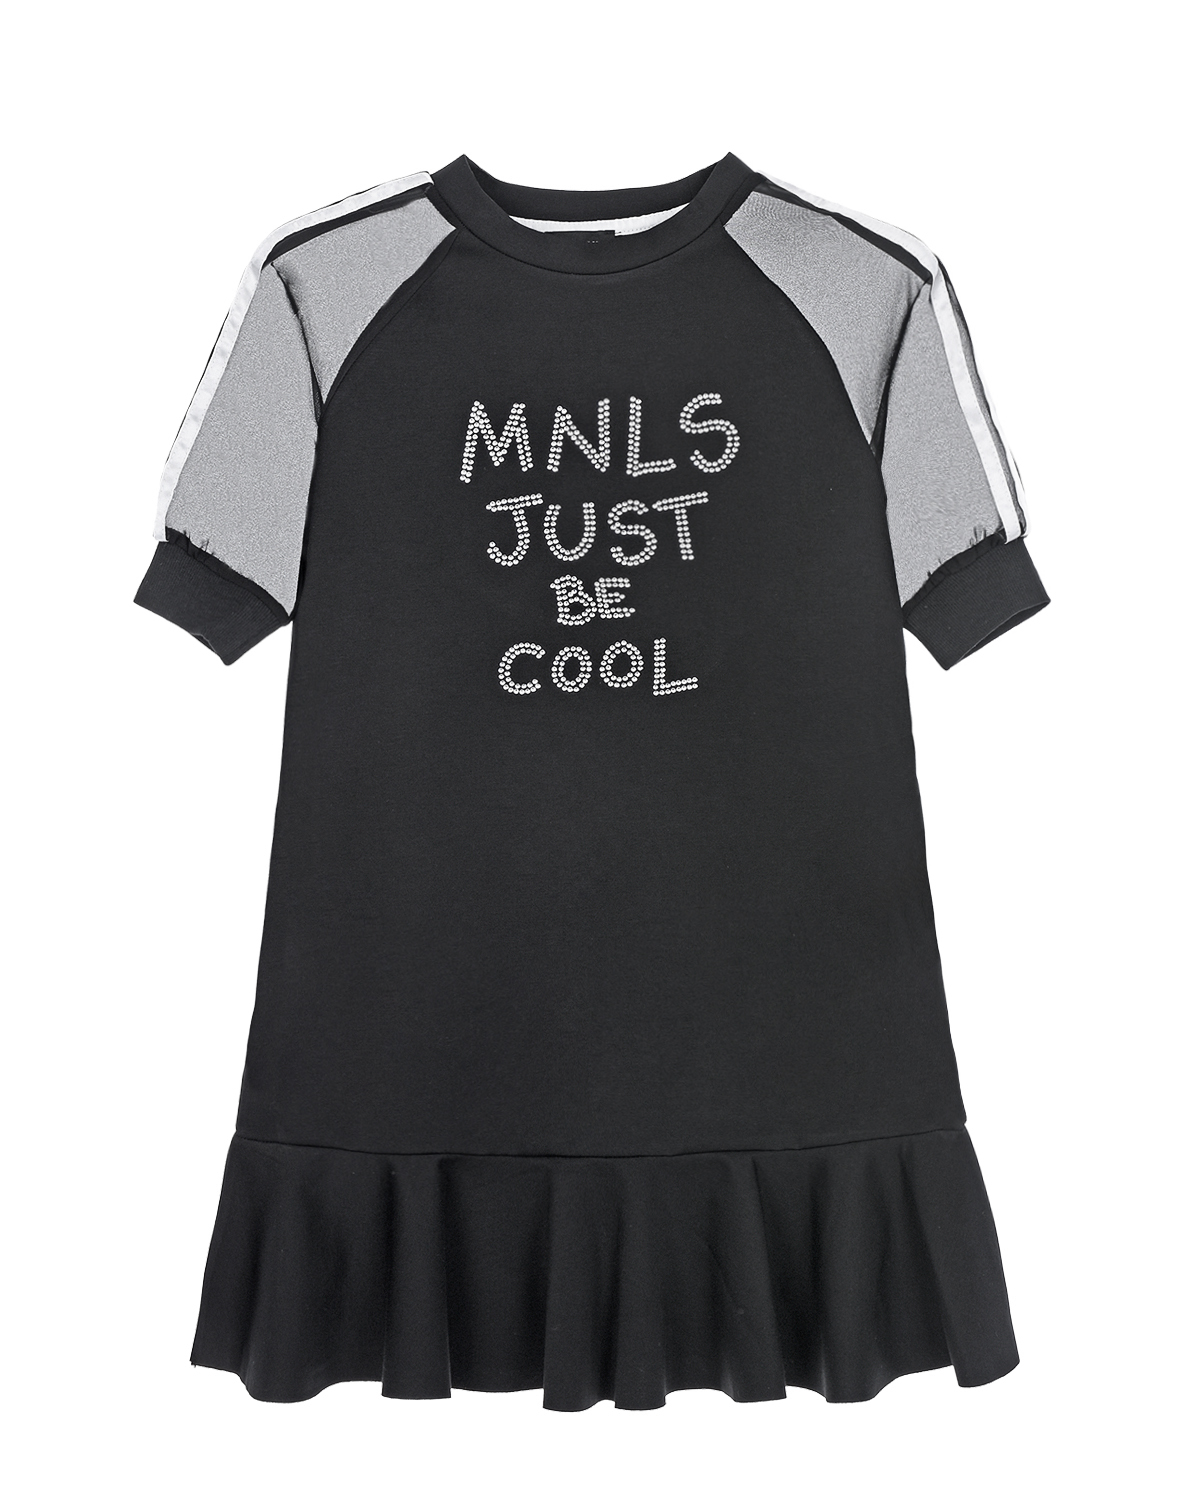 Черное платье с надписью "Just be cool" Monnalisa детское - фото 1